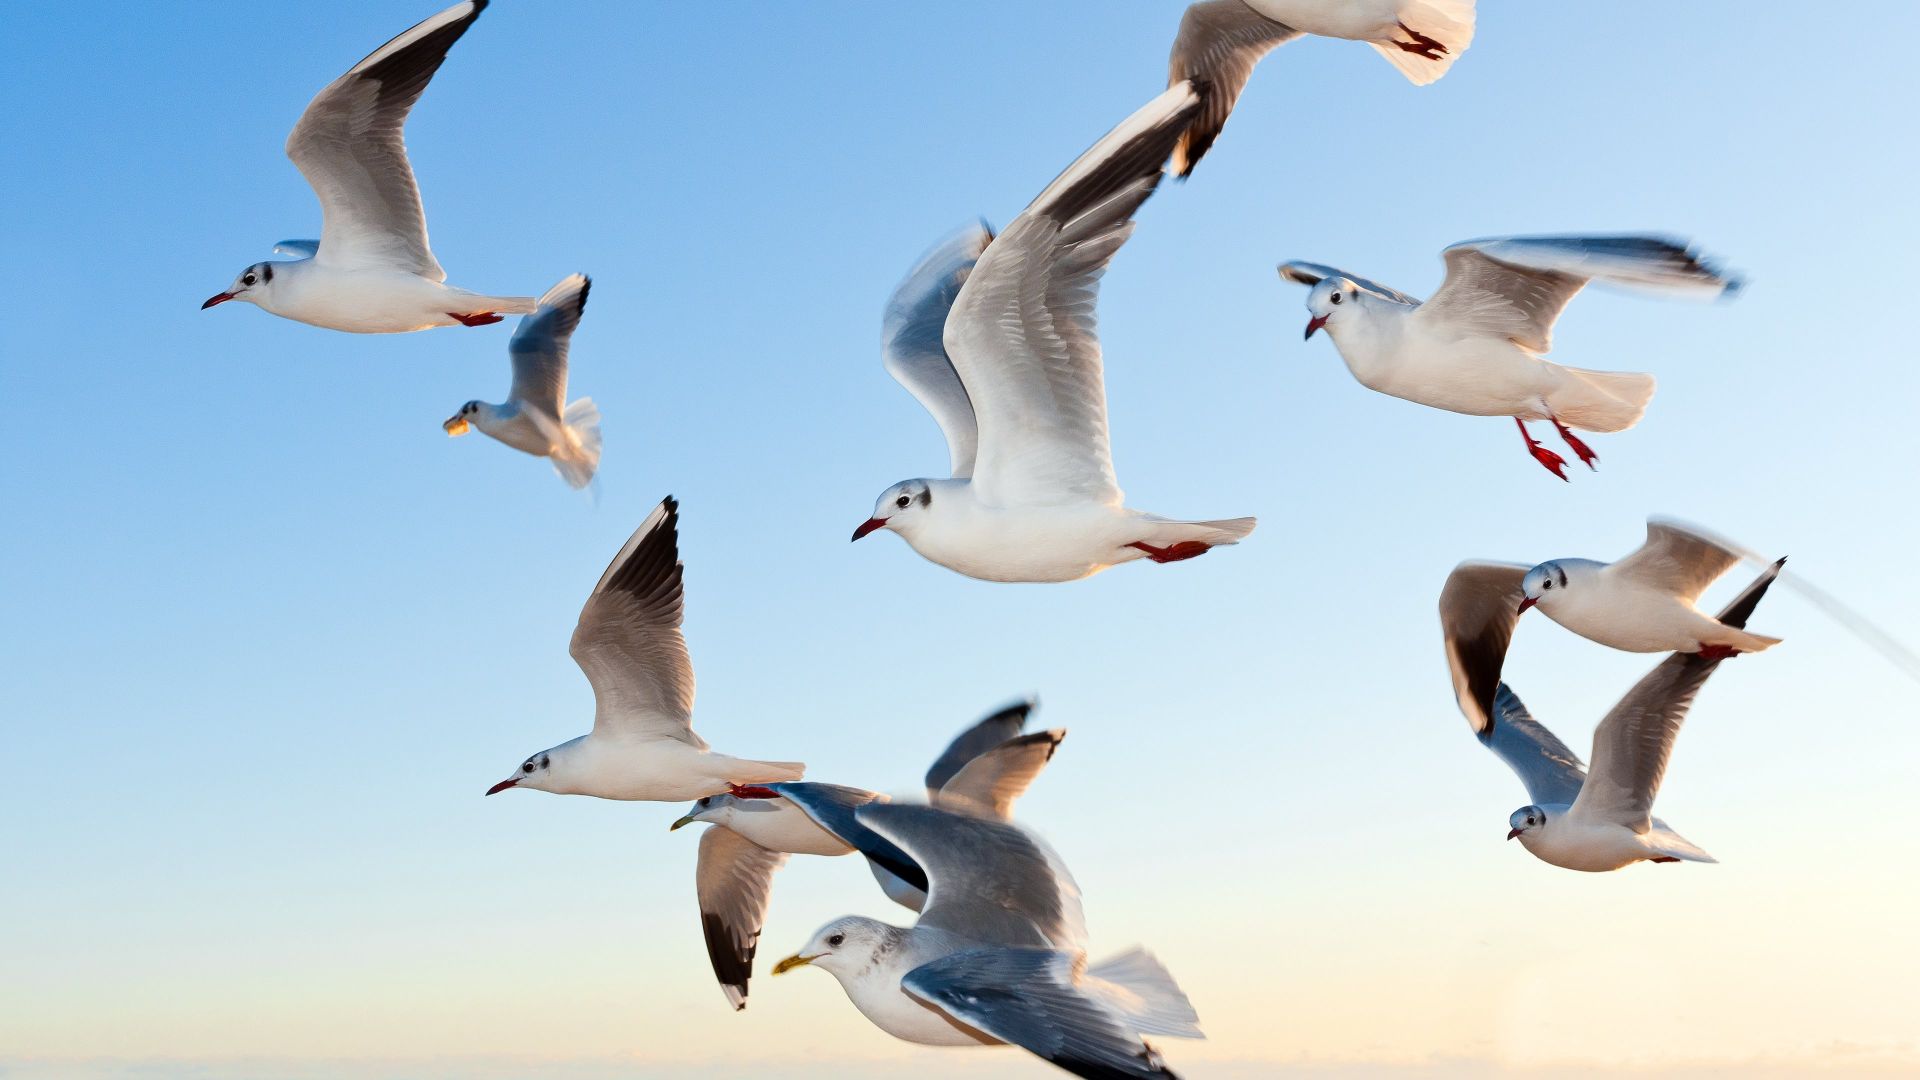 Wallpaper Seagulls above ocean waves